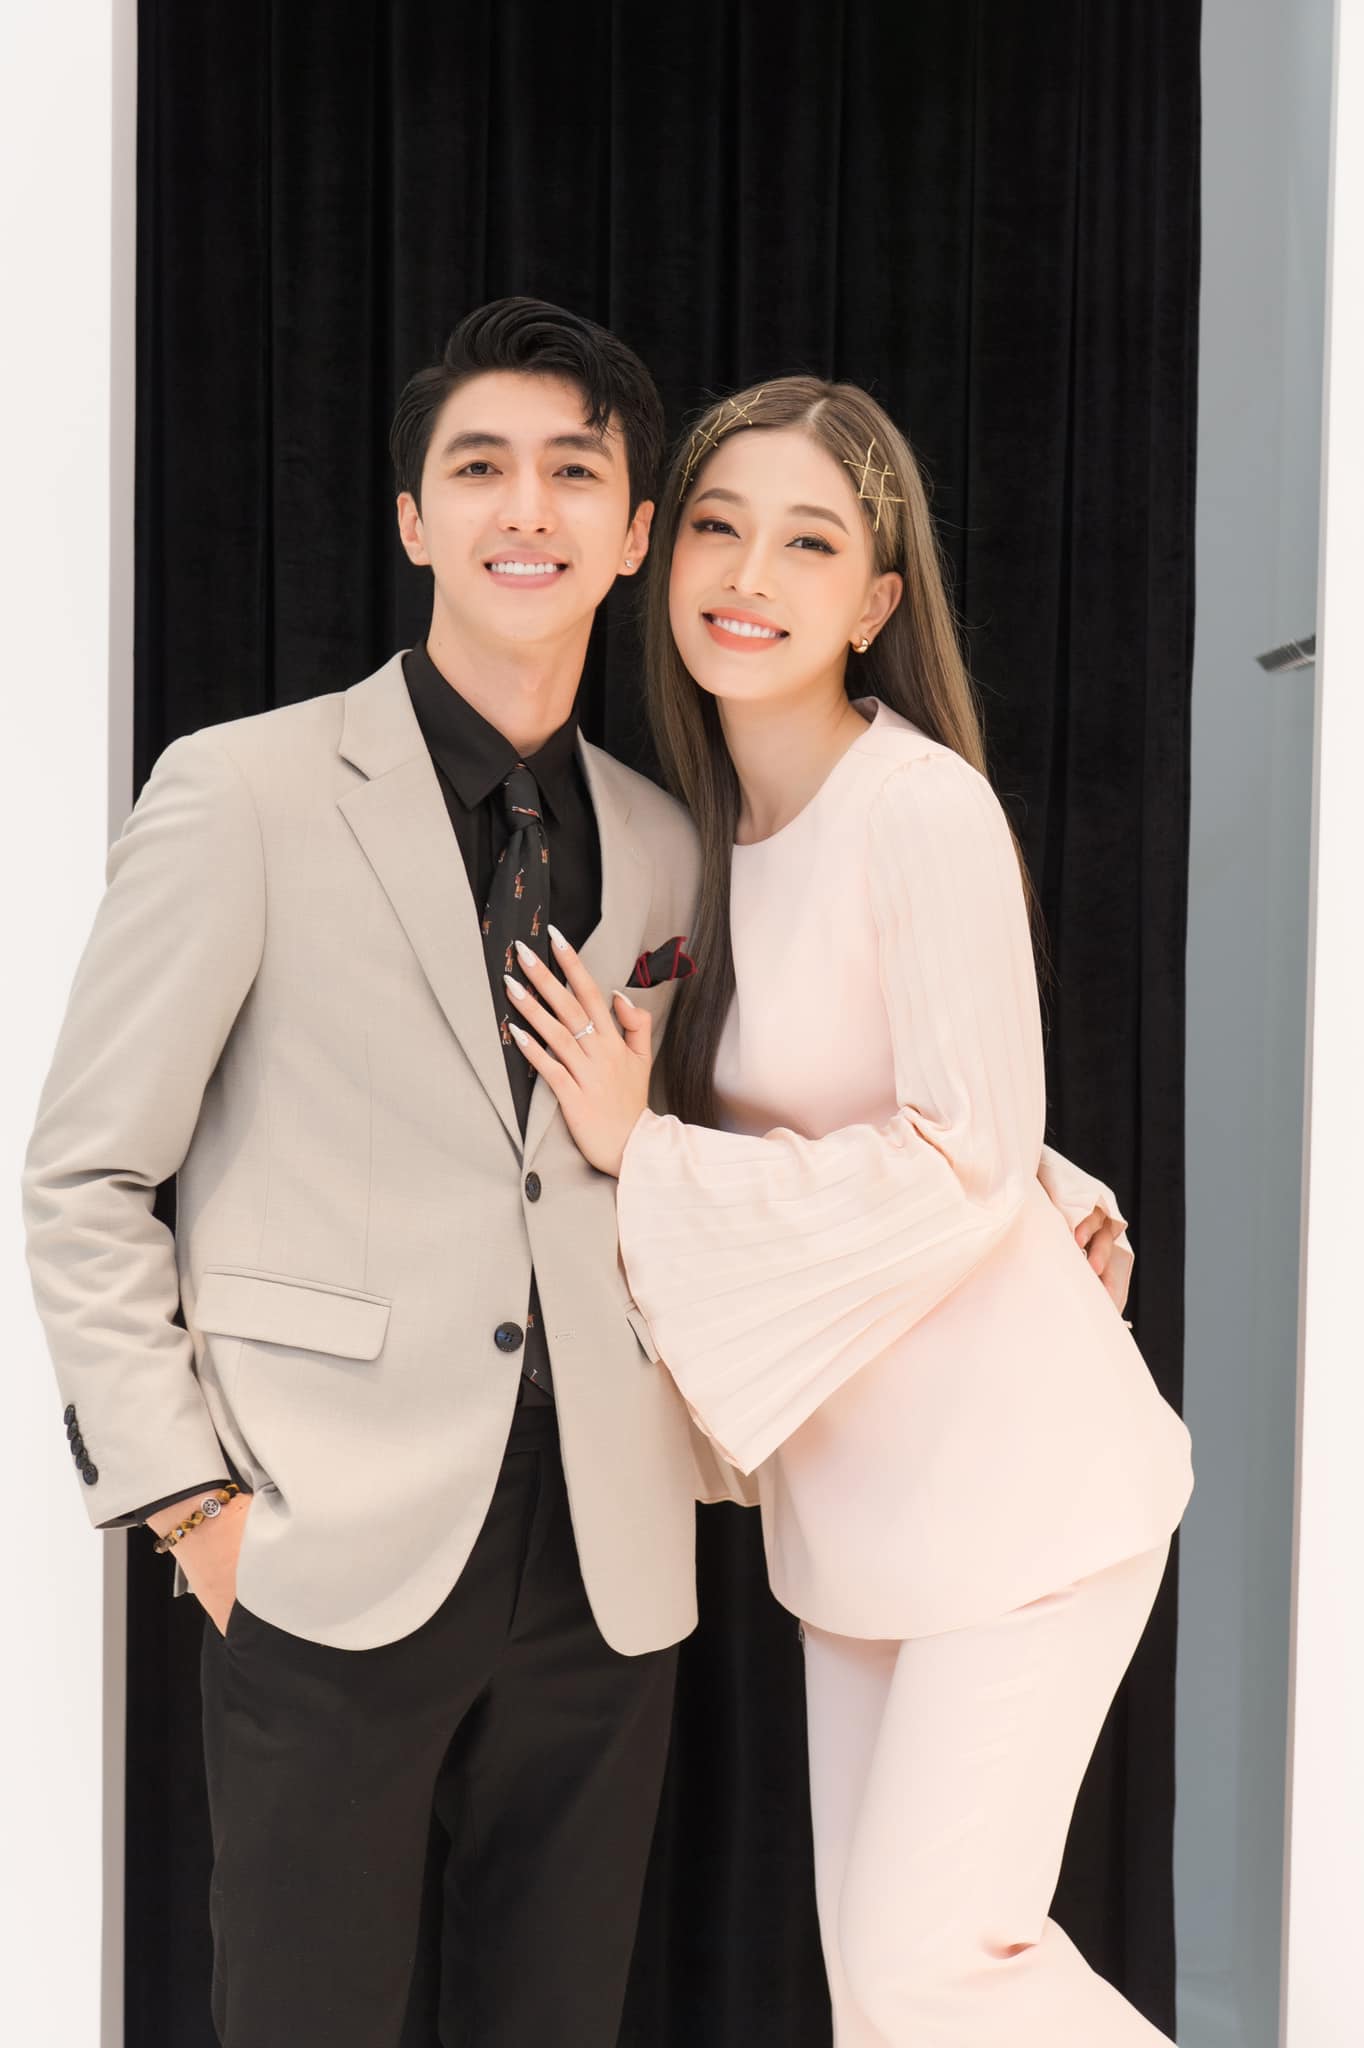 Cuộc sống tân hôn của sao Việt lên xe hoa năm 2022: Ngô Thanh Vân như hình với bóng cùng ông xã, Đỗ Mỹ Linh khiến chồng thấy 'áp lực' - Ảnh 6.